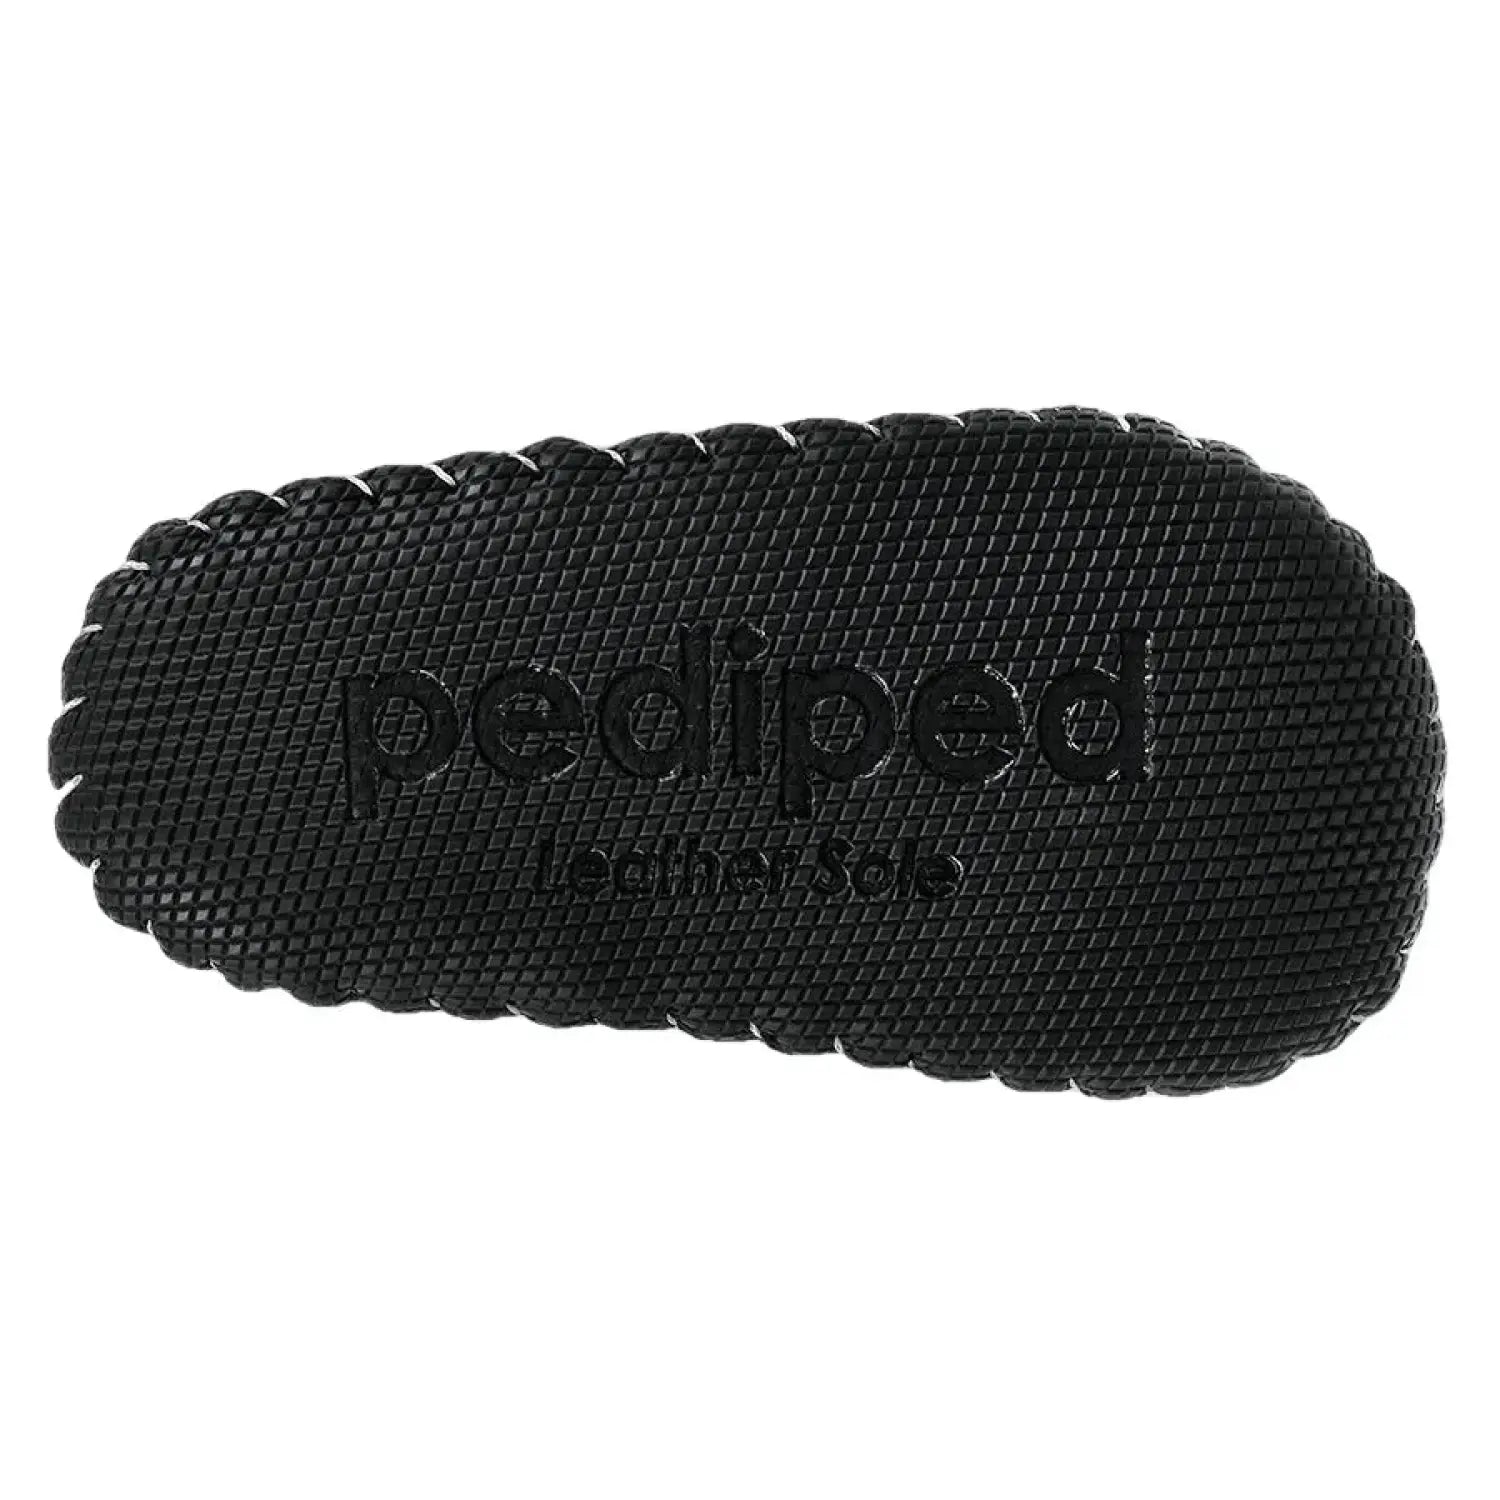 Pediped Originals® Dani Dusty Rose, black bottom sole shown.